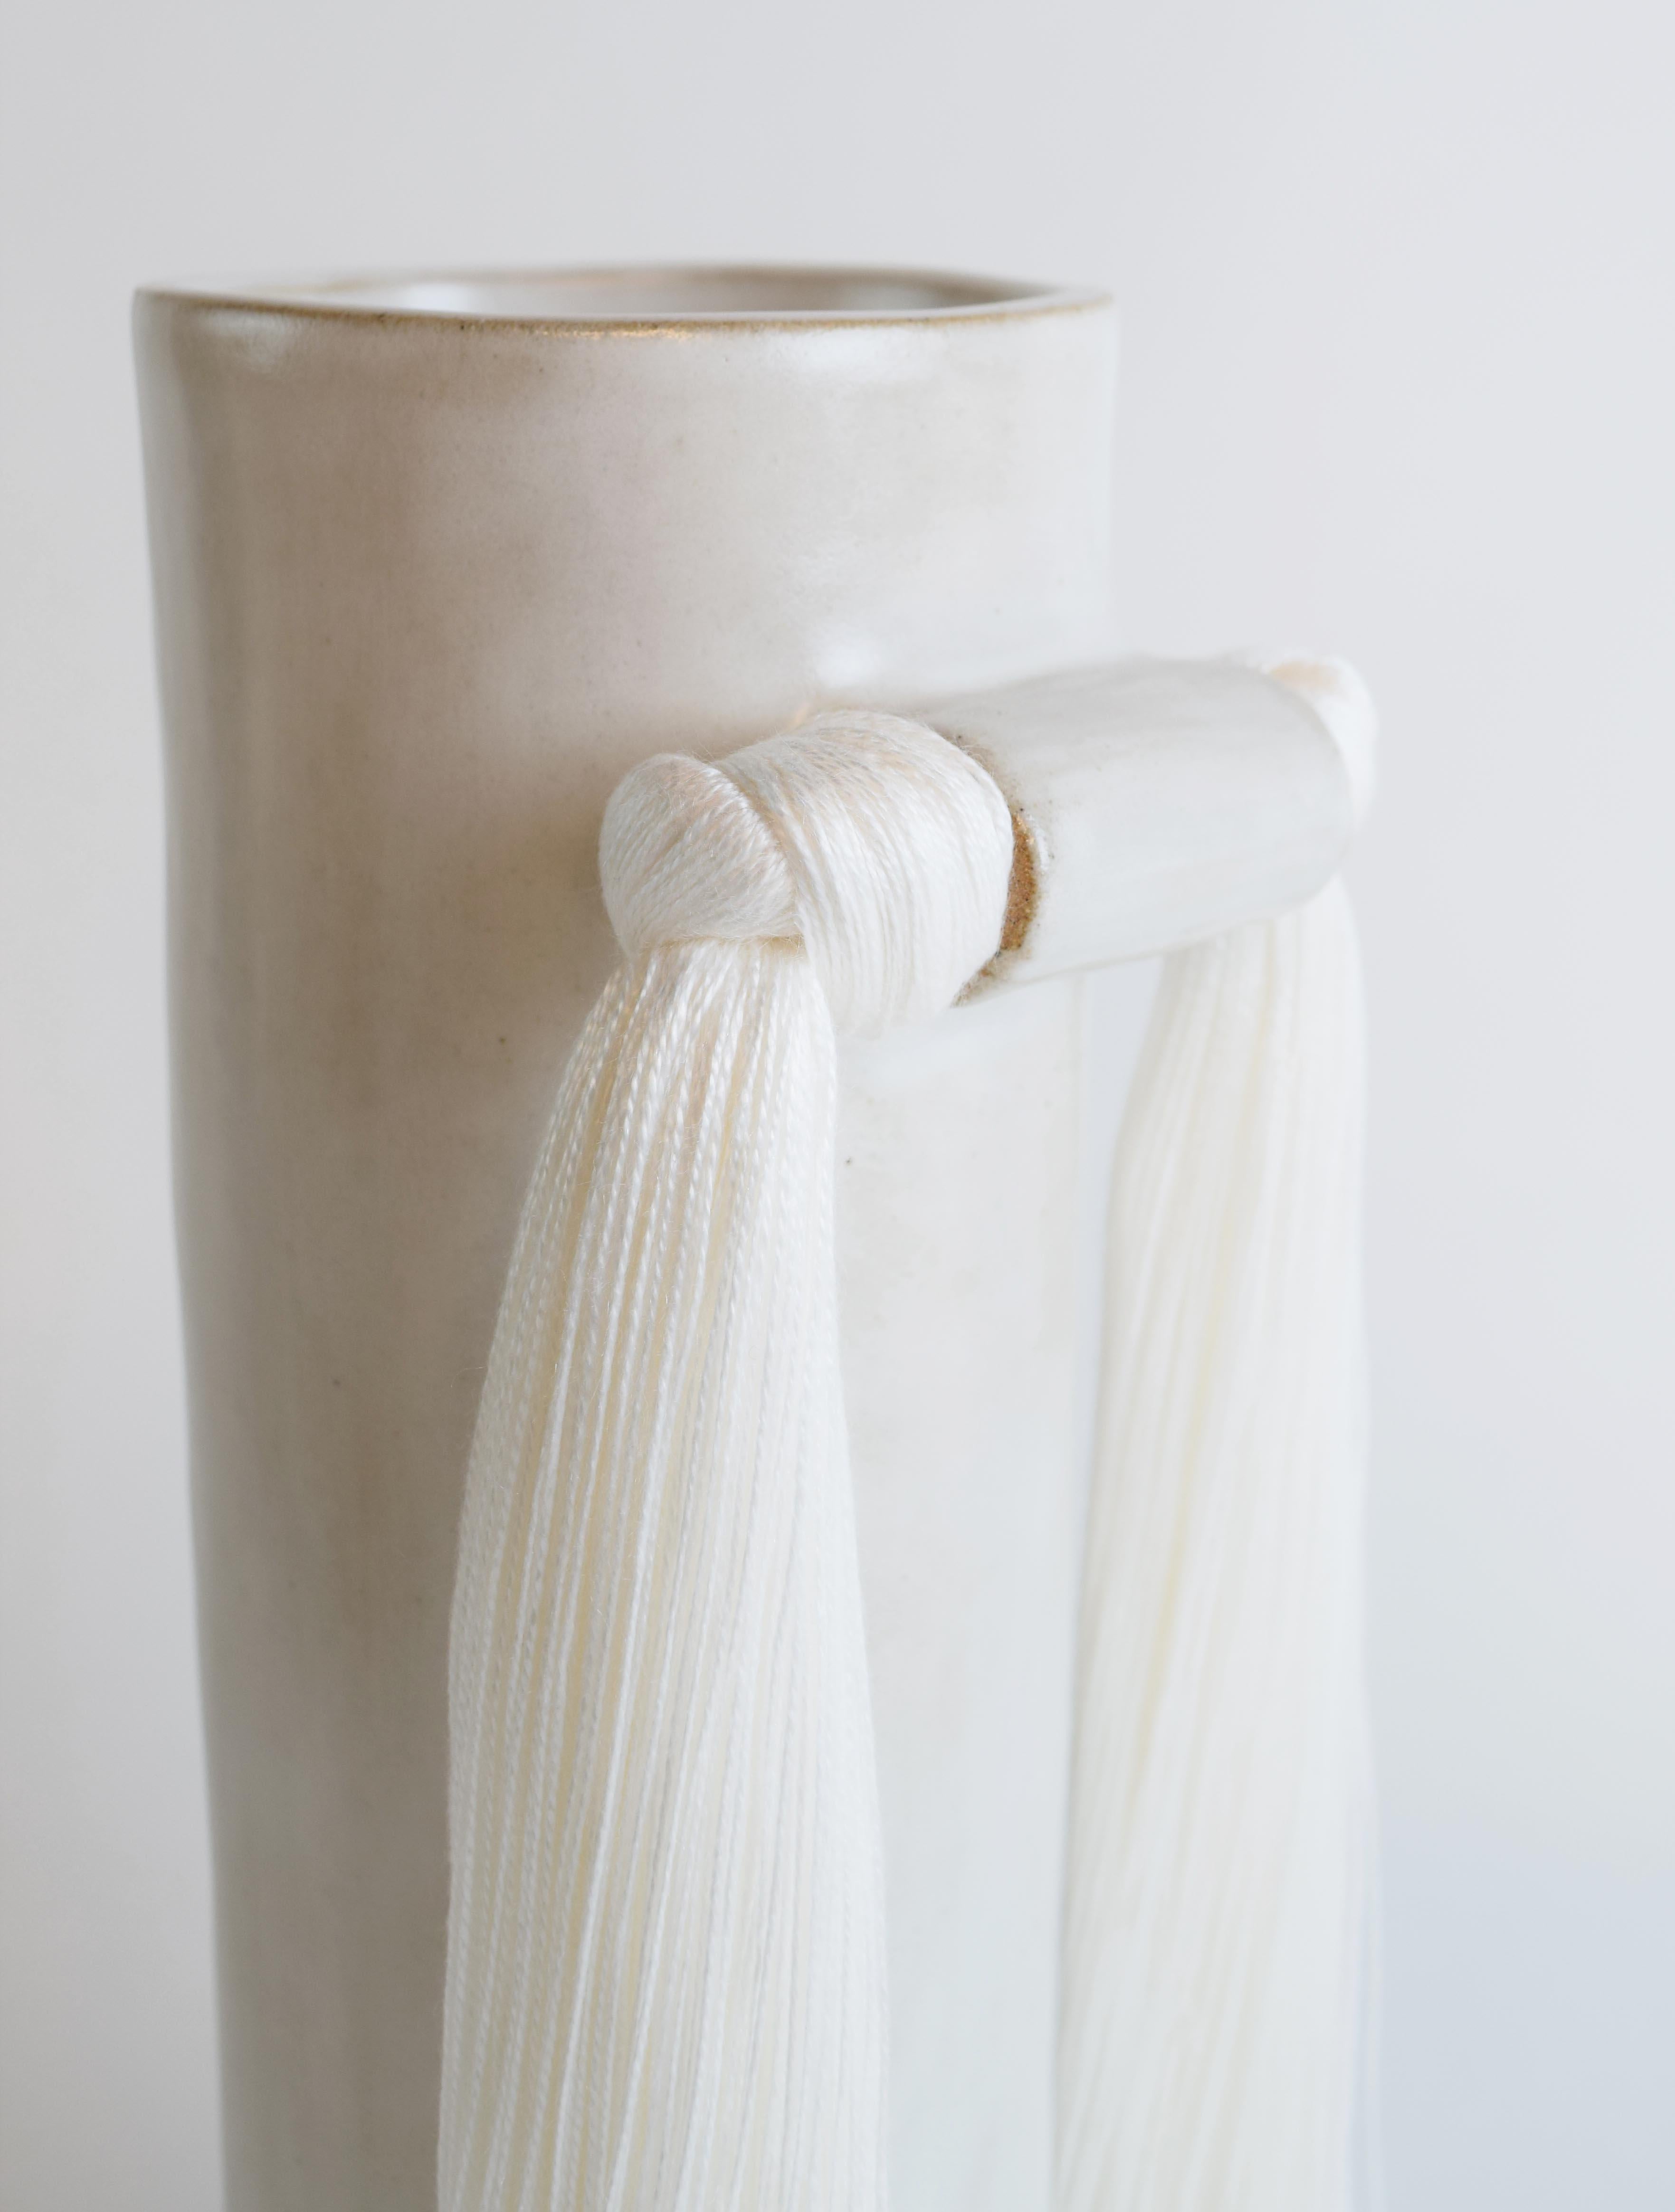 Organic Modern Handmade Ceramic Vase #531 in Satin White Glaze with White Tencel Fringe Detail For Sale